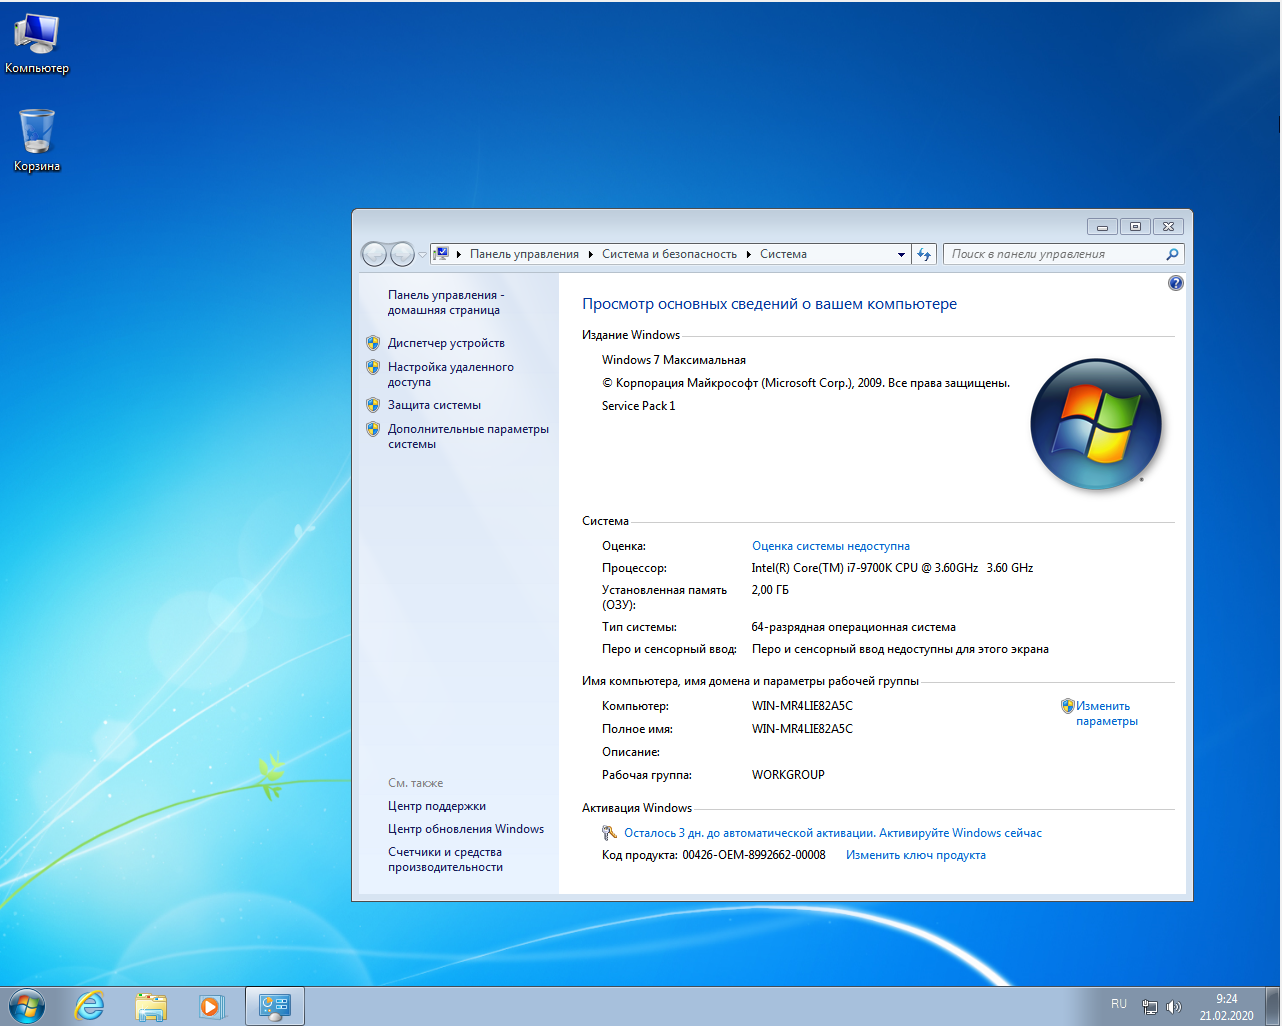 Windows 7 группы. 64-Разрядная Операционная система, процессор x64. Компьютер 2010 года на виндовс 7. Windows 7 Ultimate ключ. Виндовс 7 максимальная 64 бит картинки.